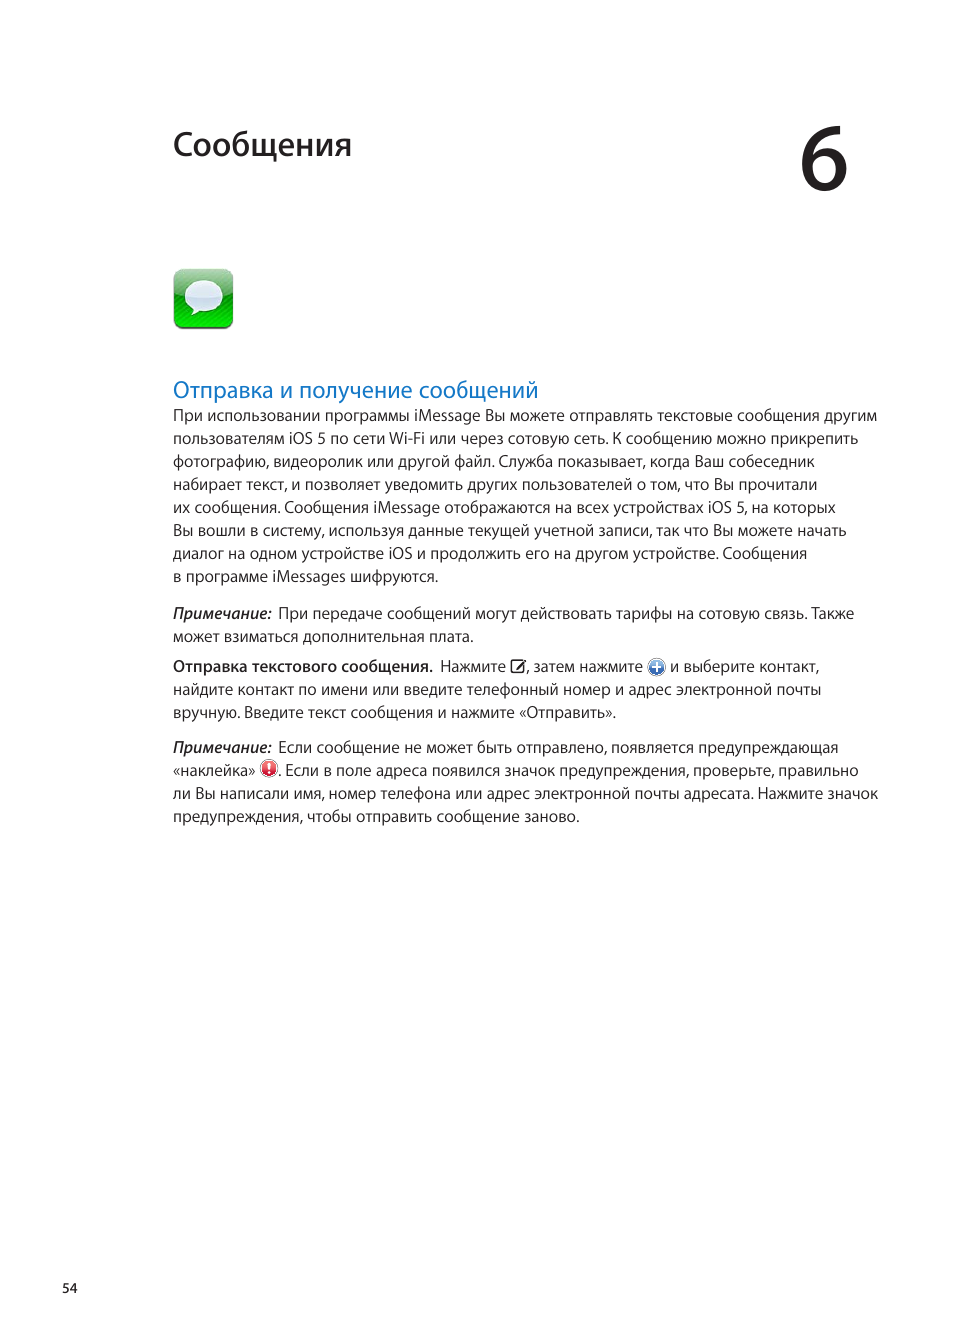 Глава 6: сообщения, Отправка и получение сообщений, 54 отправка и получение сообщений | Сообщения | Инструкция по эксплуатации Apple iPad iOS 5.1 | Страница 54 / 159